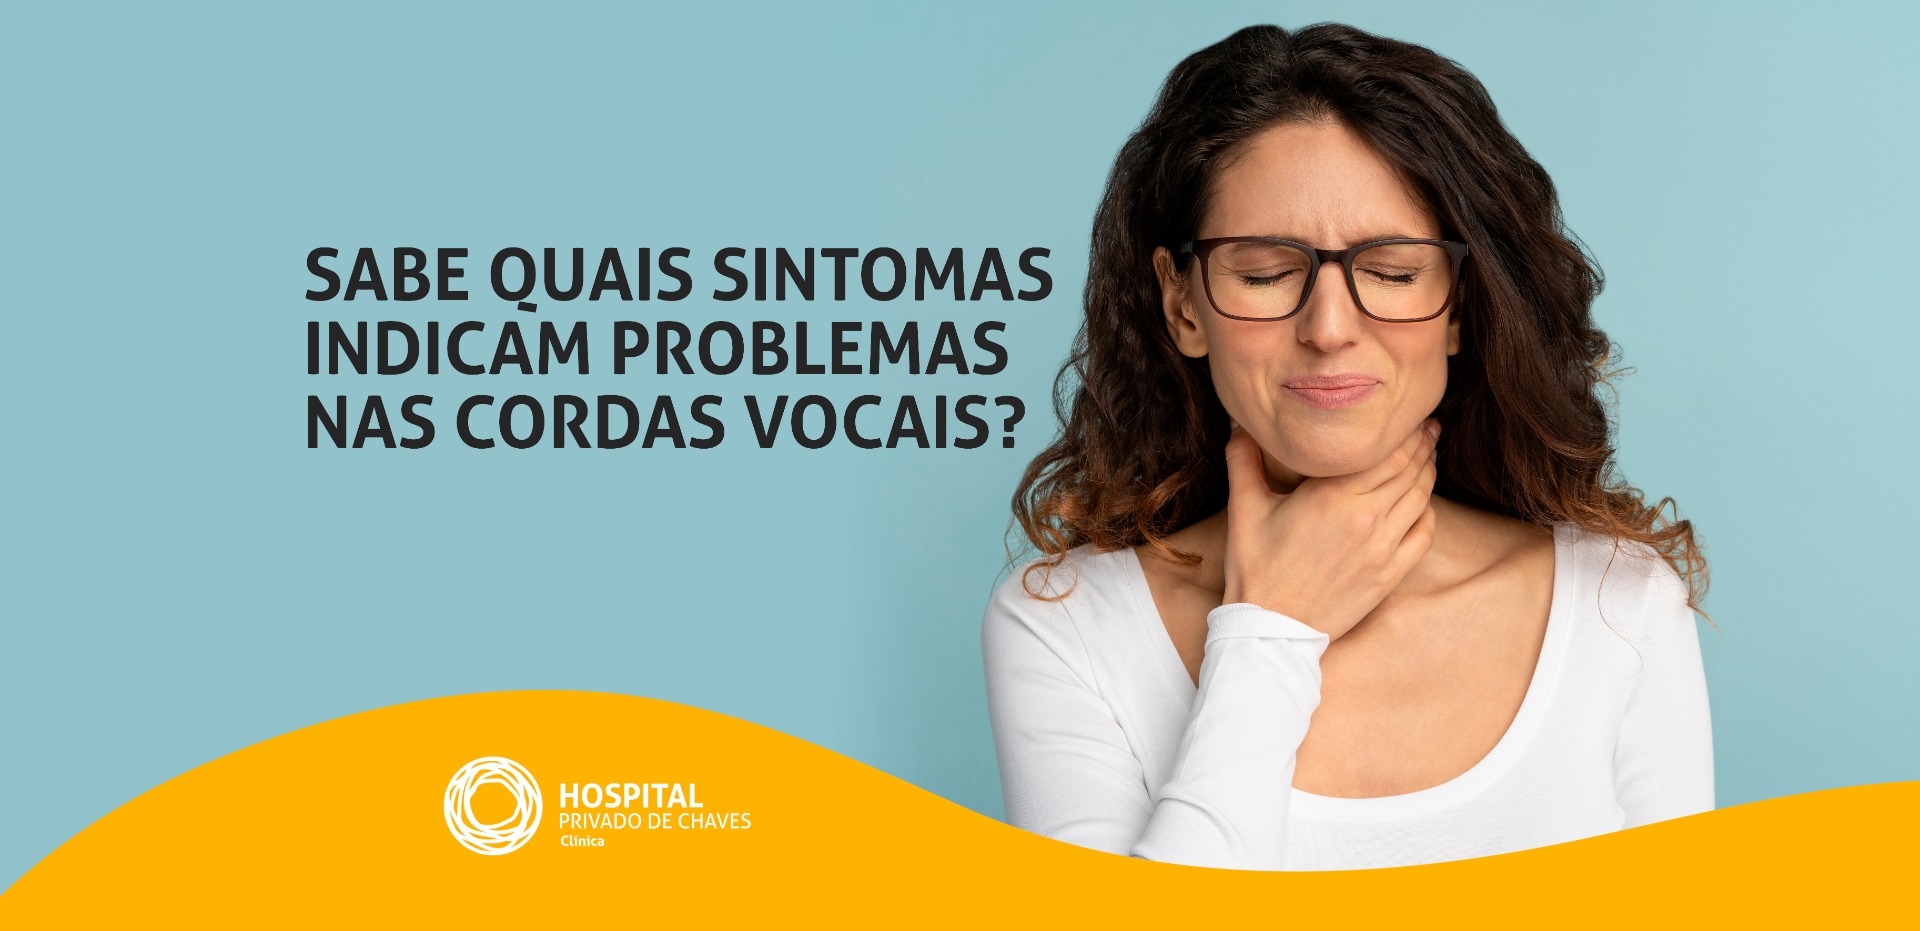 Sabe quais sintomas indicam problemas nas cordas vocais?